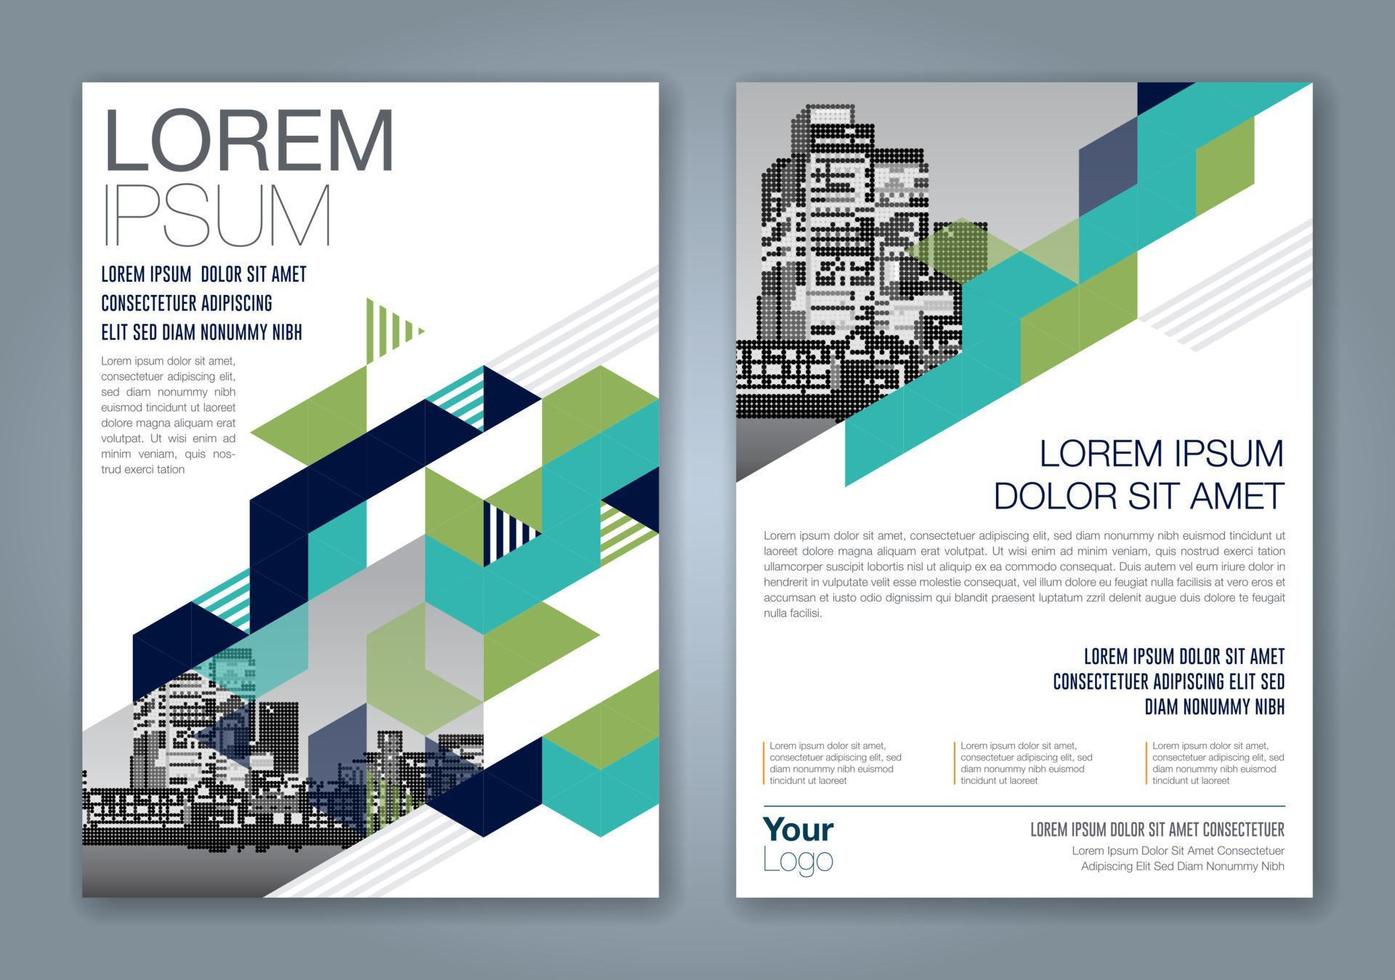 minimala geometriska former design bakgrund för företag årsredovisning bokomslag broschyr flyer affisch vektor